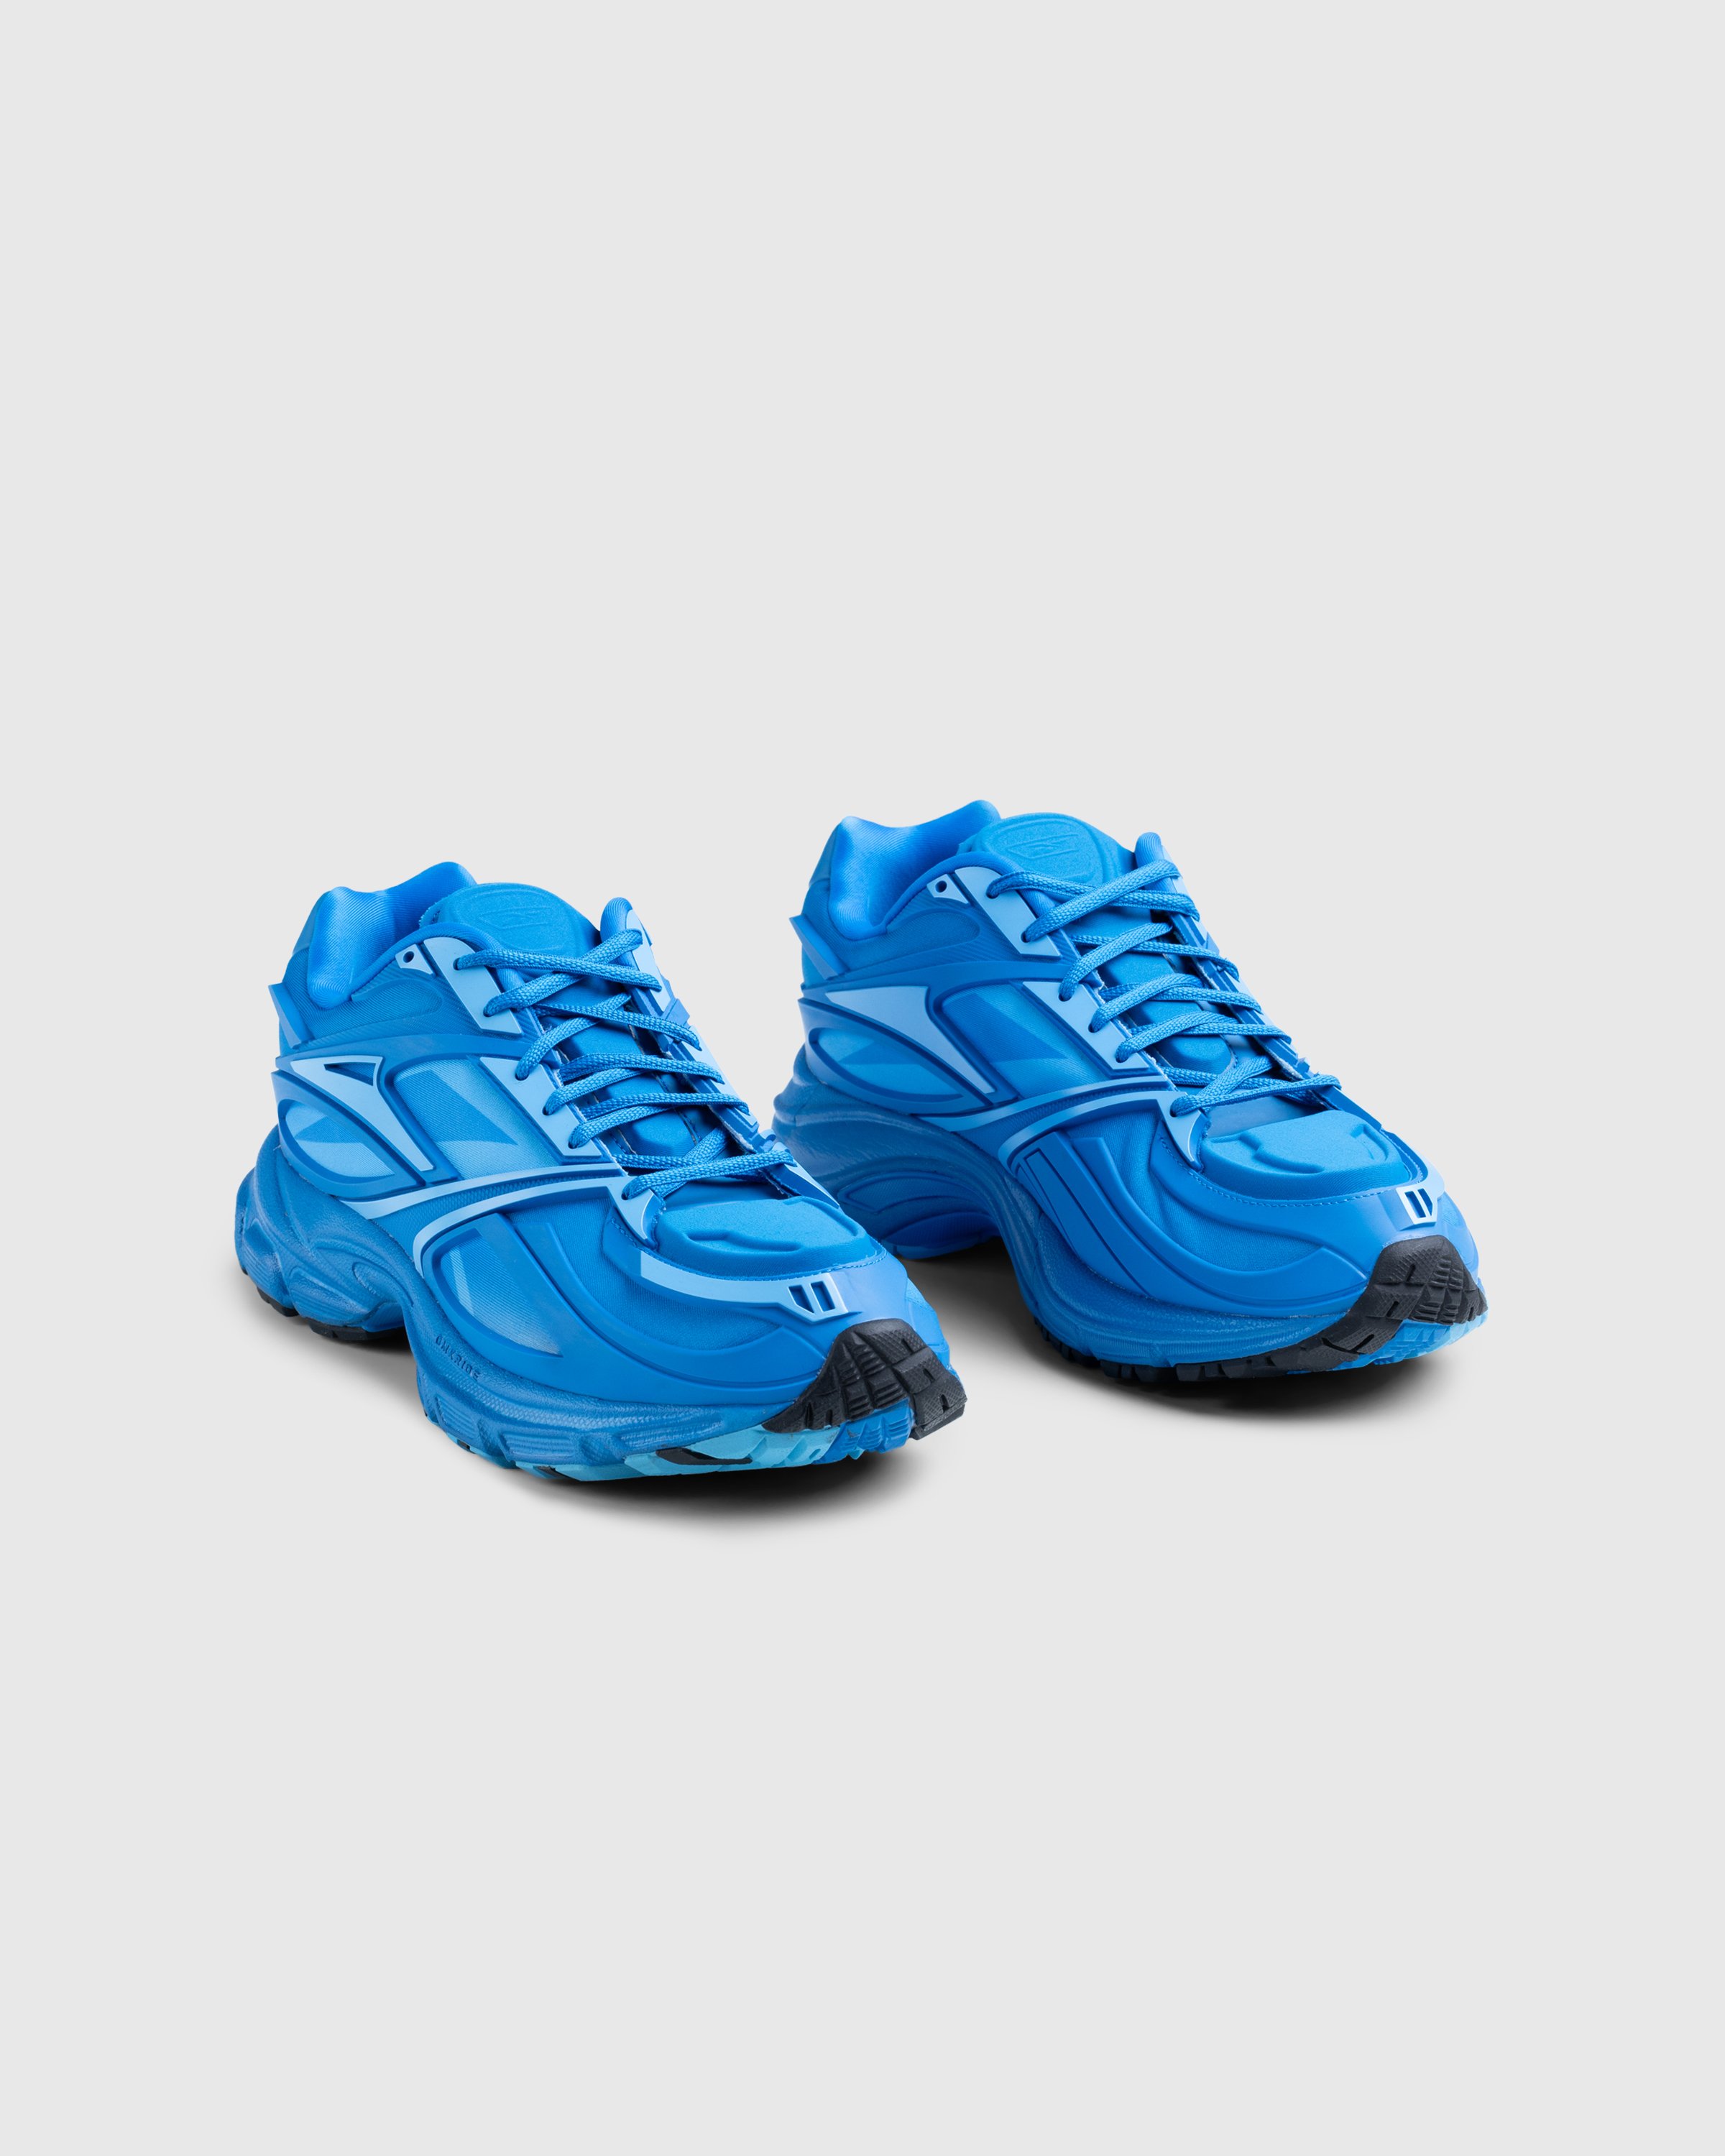 Reebok - PREMIER ROAD LIGHT BLUE/LIGHT BLUE - Footwear - Blue - Image 2